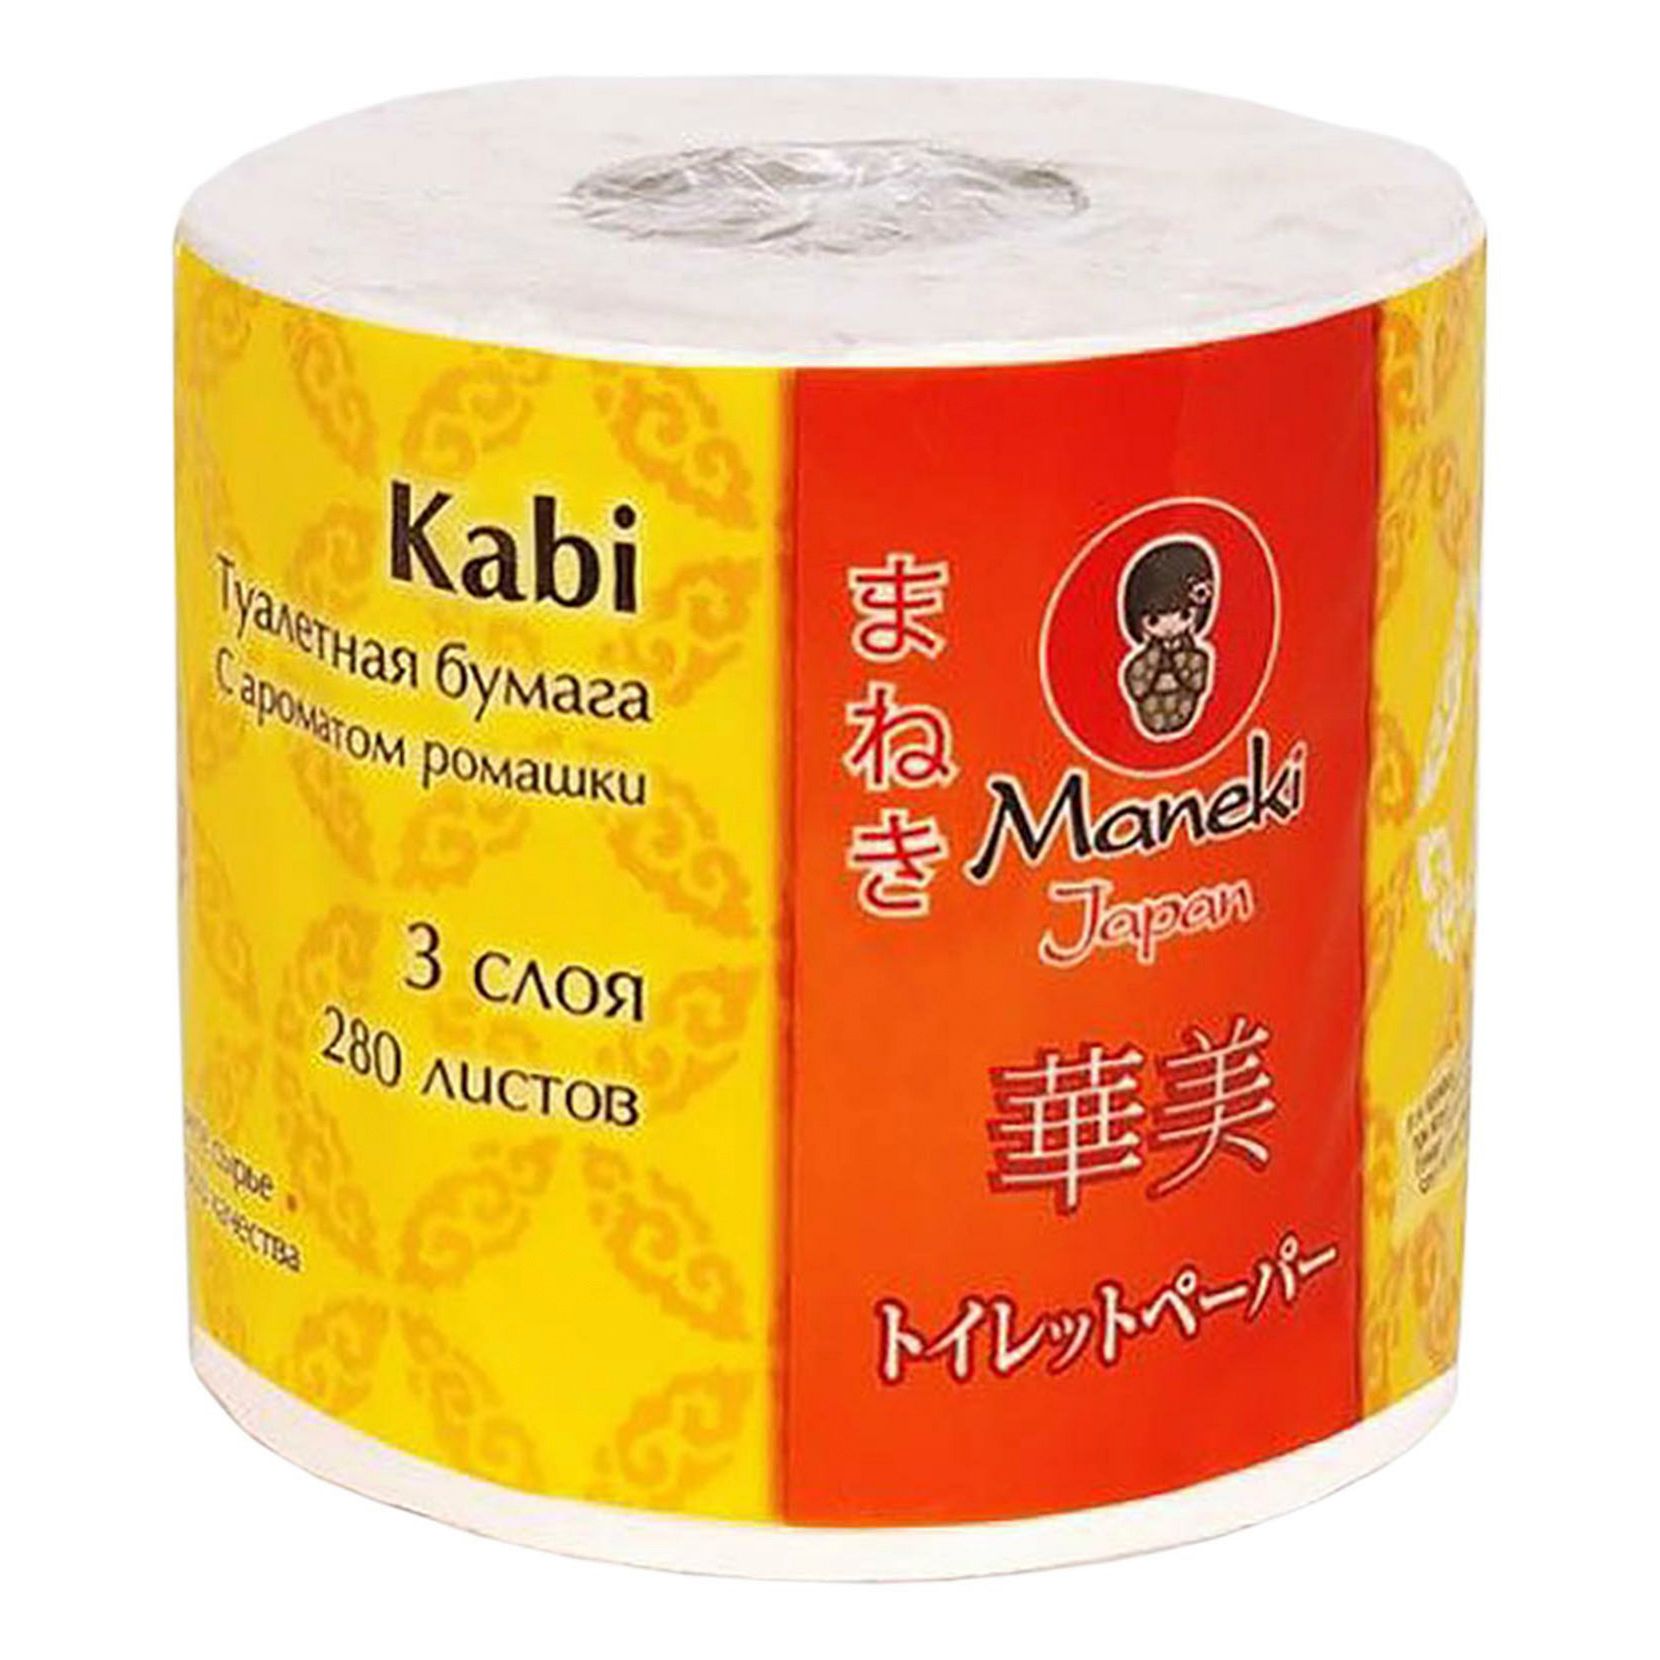 Туалетная бумага Maneki Kabi Ромашка 3 слоя 1 рулон туалетная бумага maneki kabi ромашка 3 слоя гладкая белая 10 рулонов в уп 2 уп